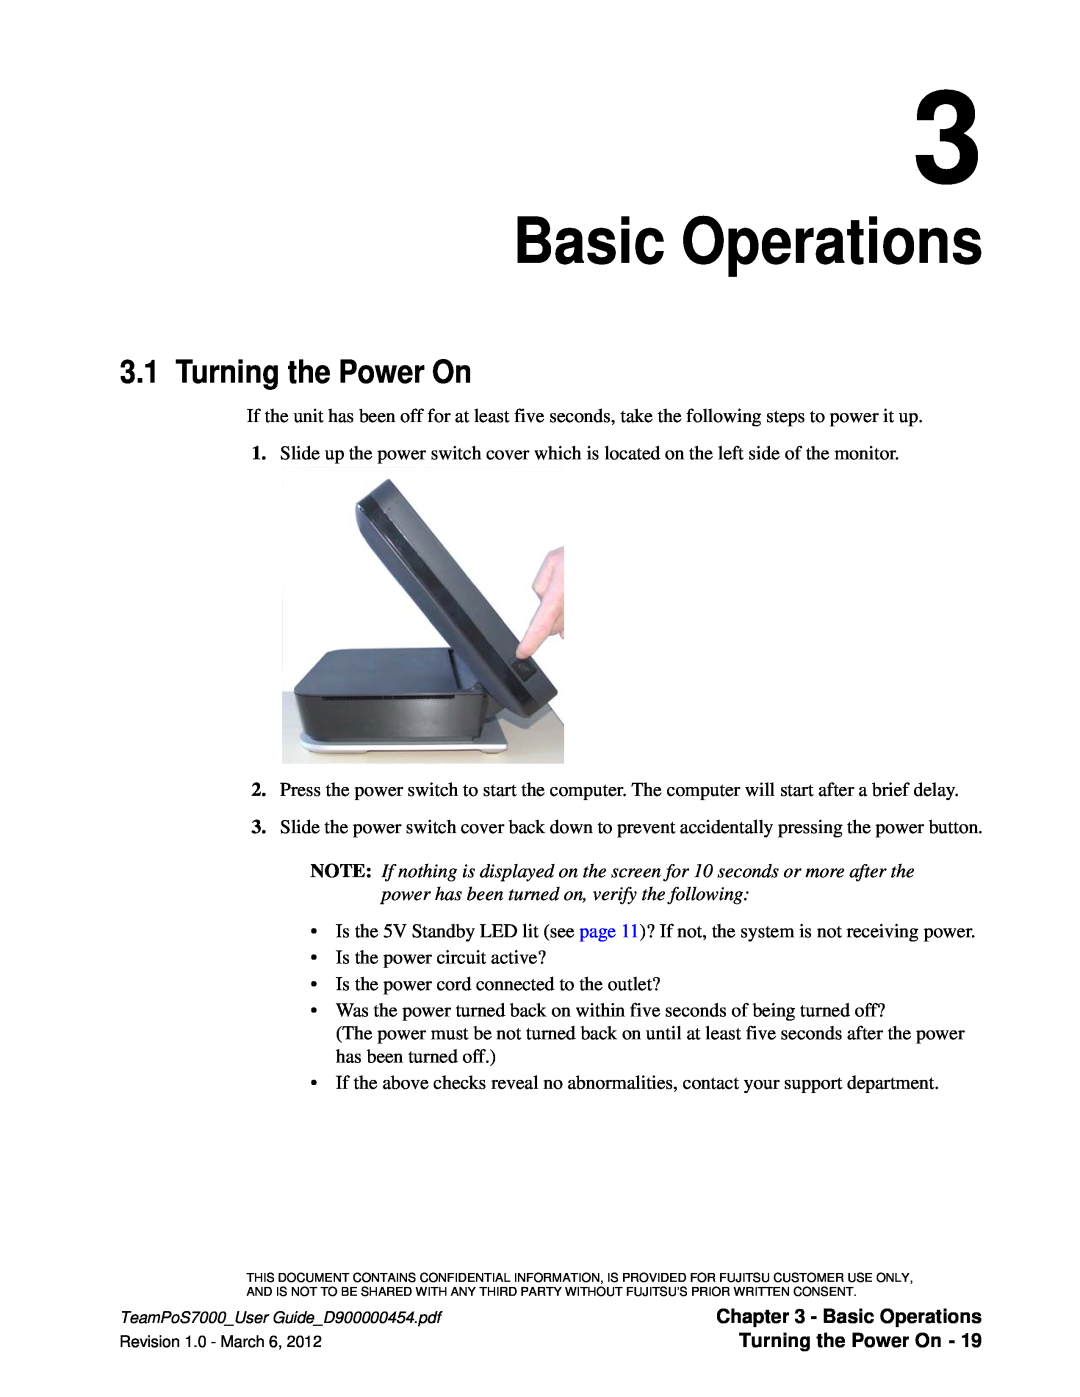 Fujitsu 7000 manual Basic Operations, Turning the Power On 